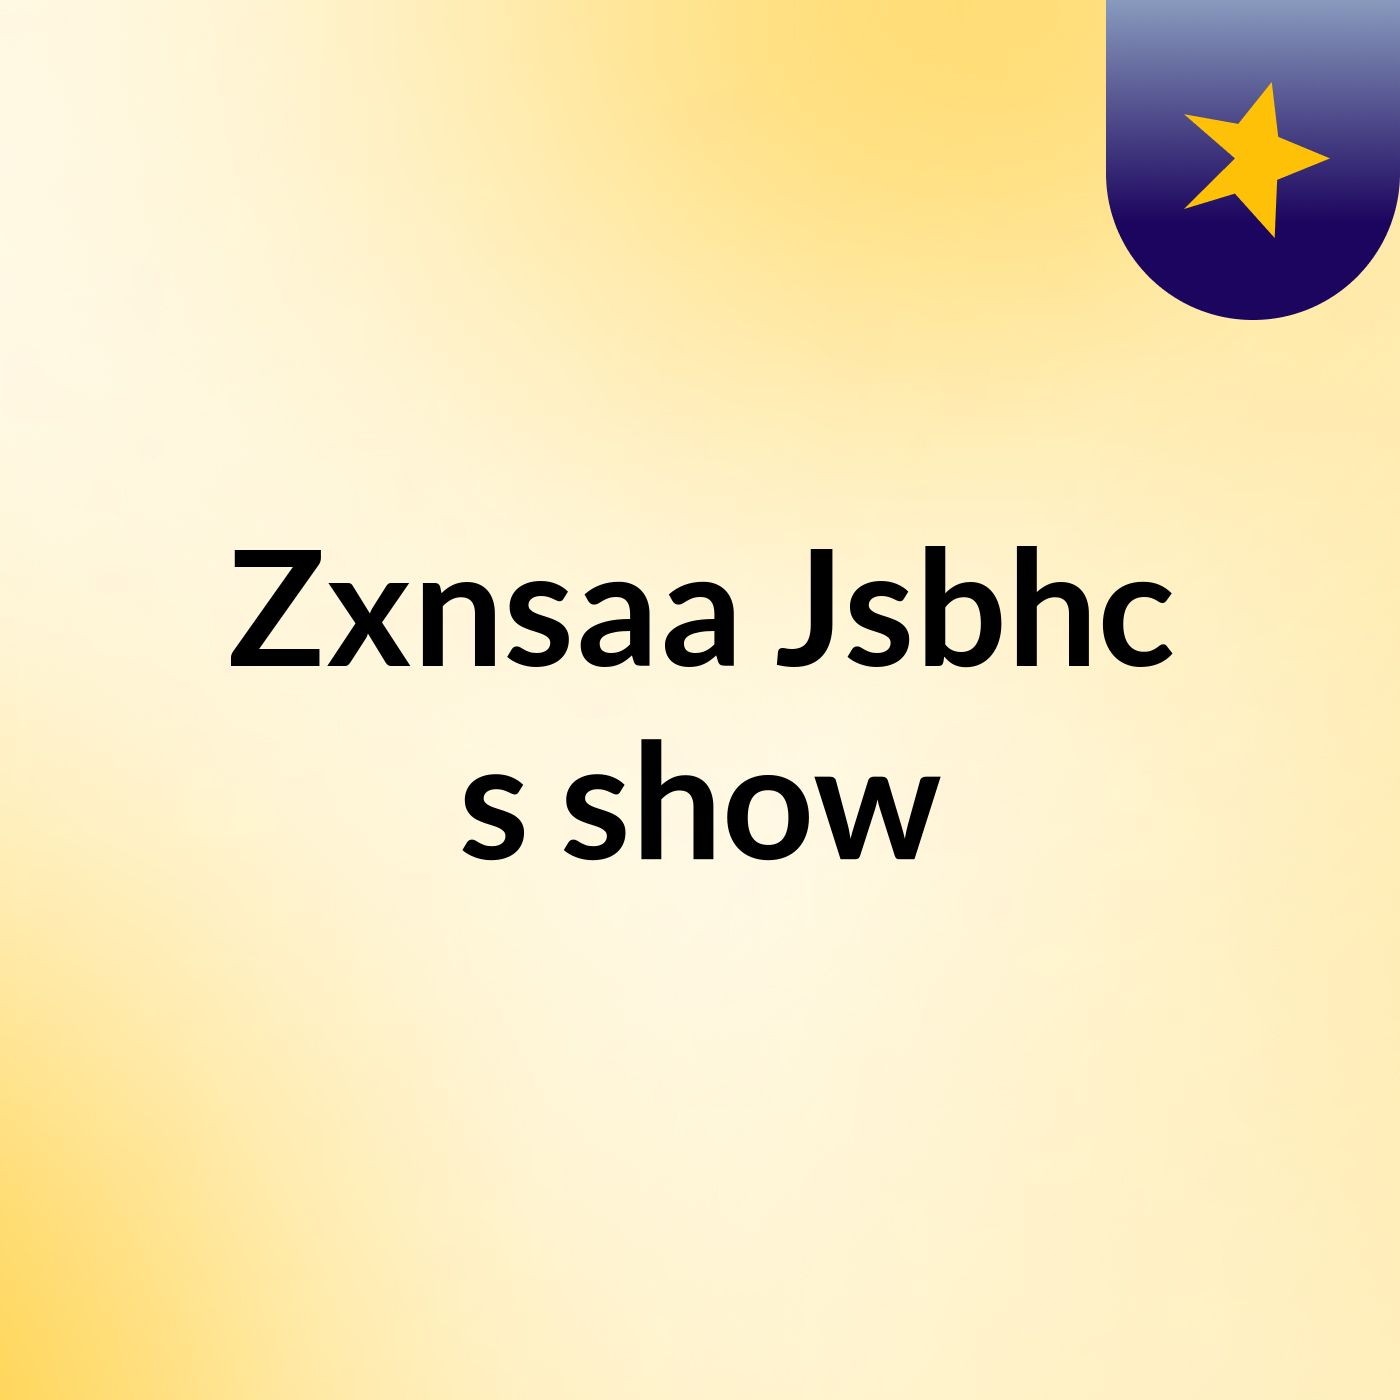 Zxnsaa Jsbhc's show